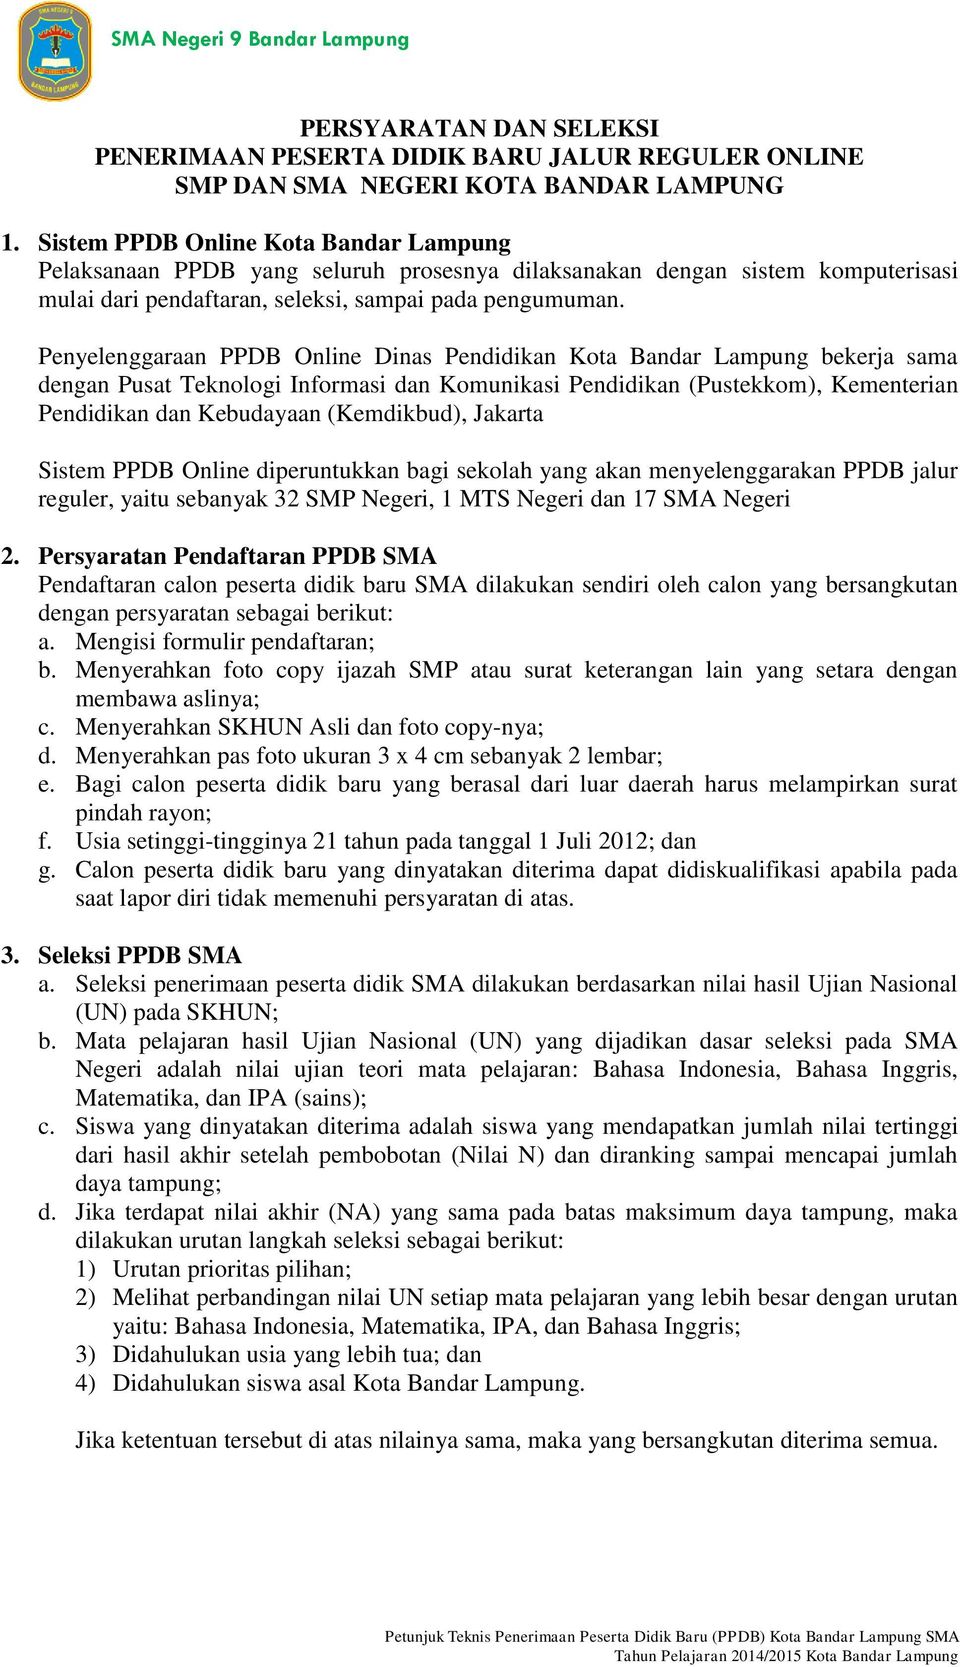 Penyelenggaraan PPDB Online Dinas Pendidikan Kota Bandar Lampung bekerja sama dengan Pusat Teknologi Informasi dan Komunikasi Pendidikan (Pustekkom), Kementerian Pendidikan dan Kebudayaan